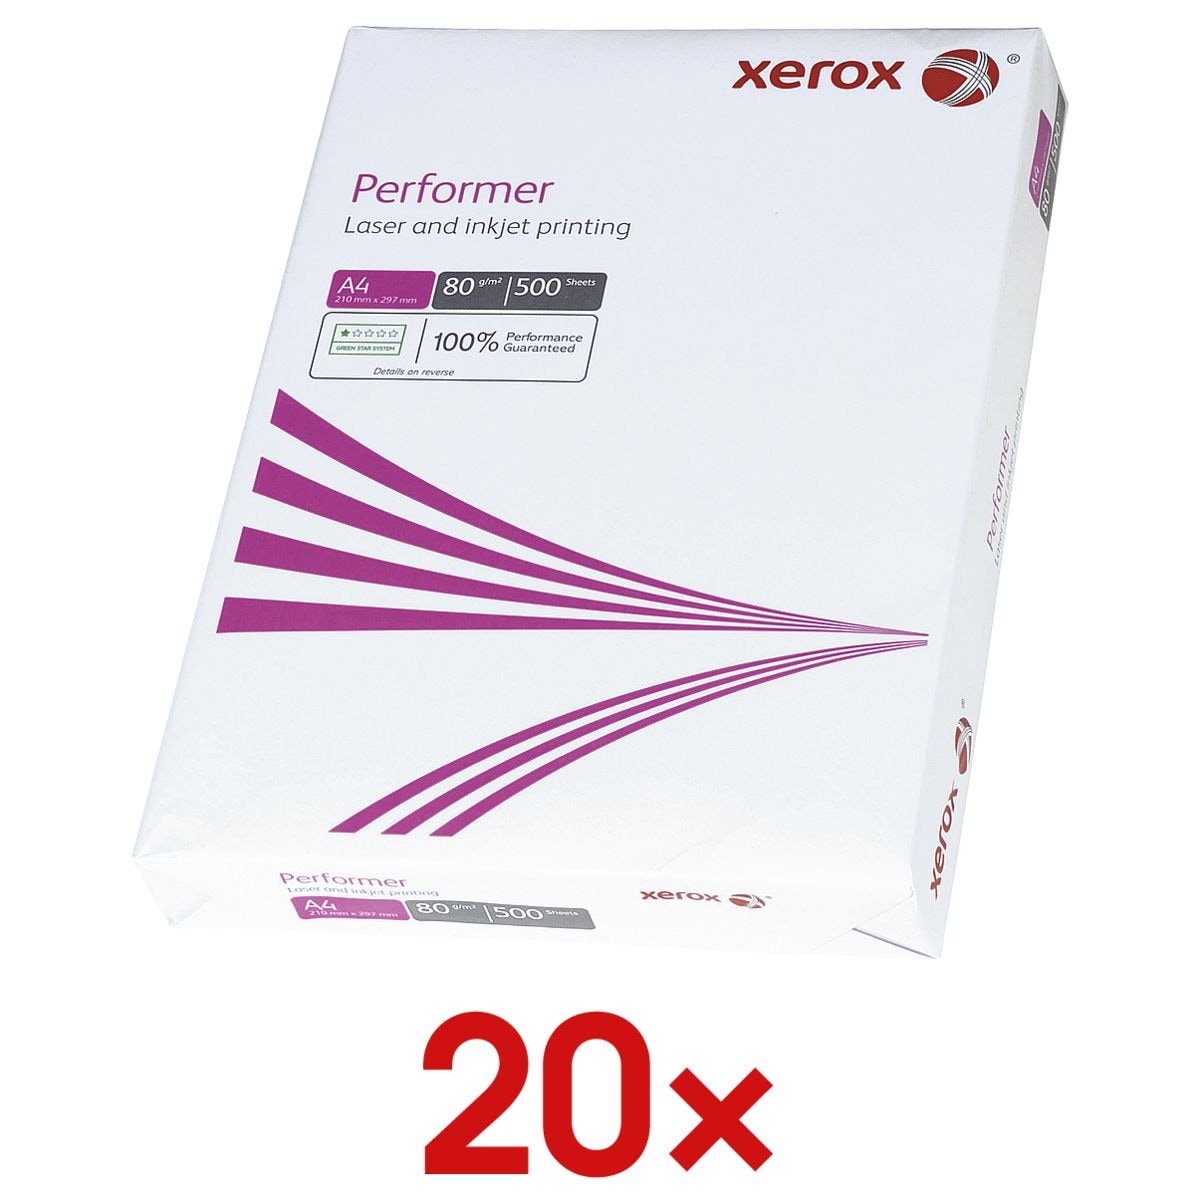 20x Kopierpapier A4 Xerox Performer - 10000 Blatt gesamt, 80g/qm